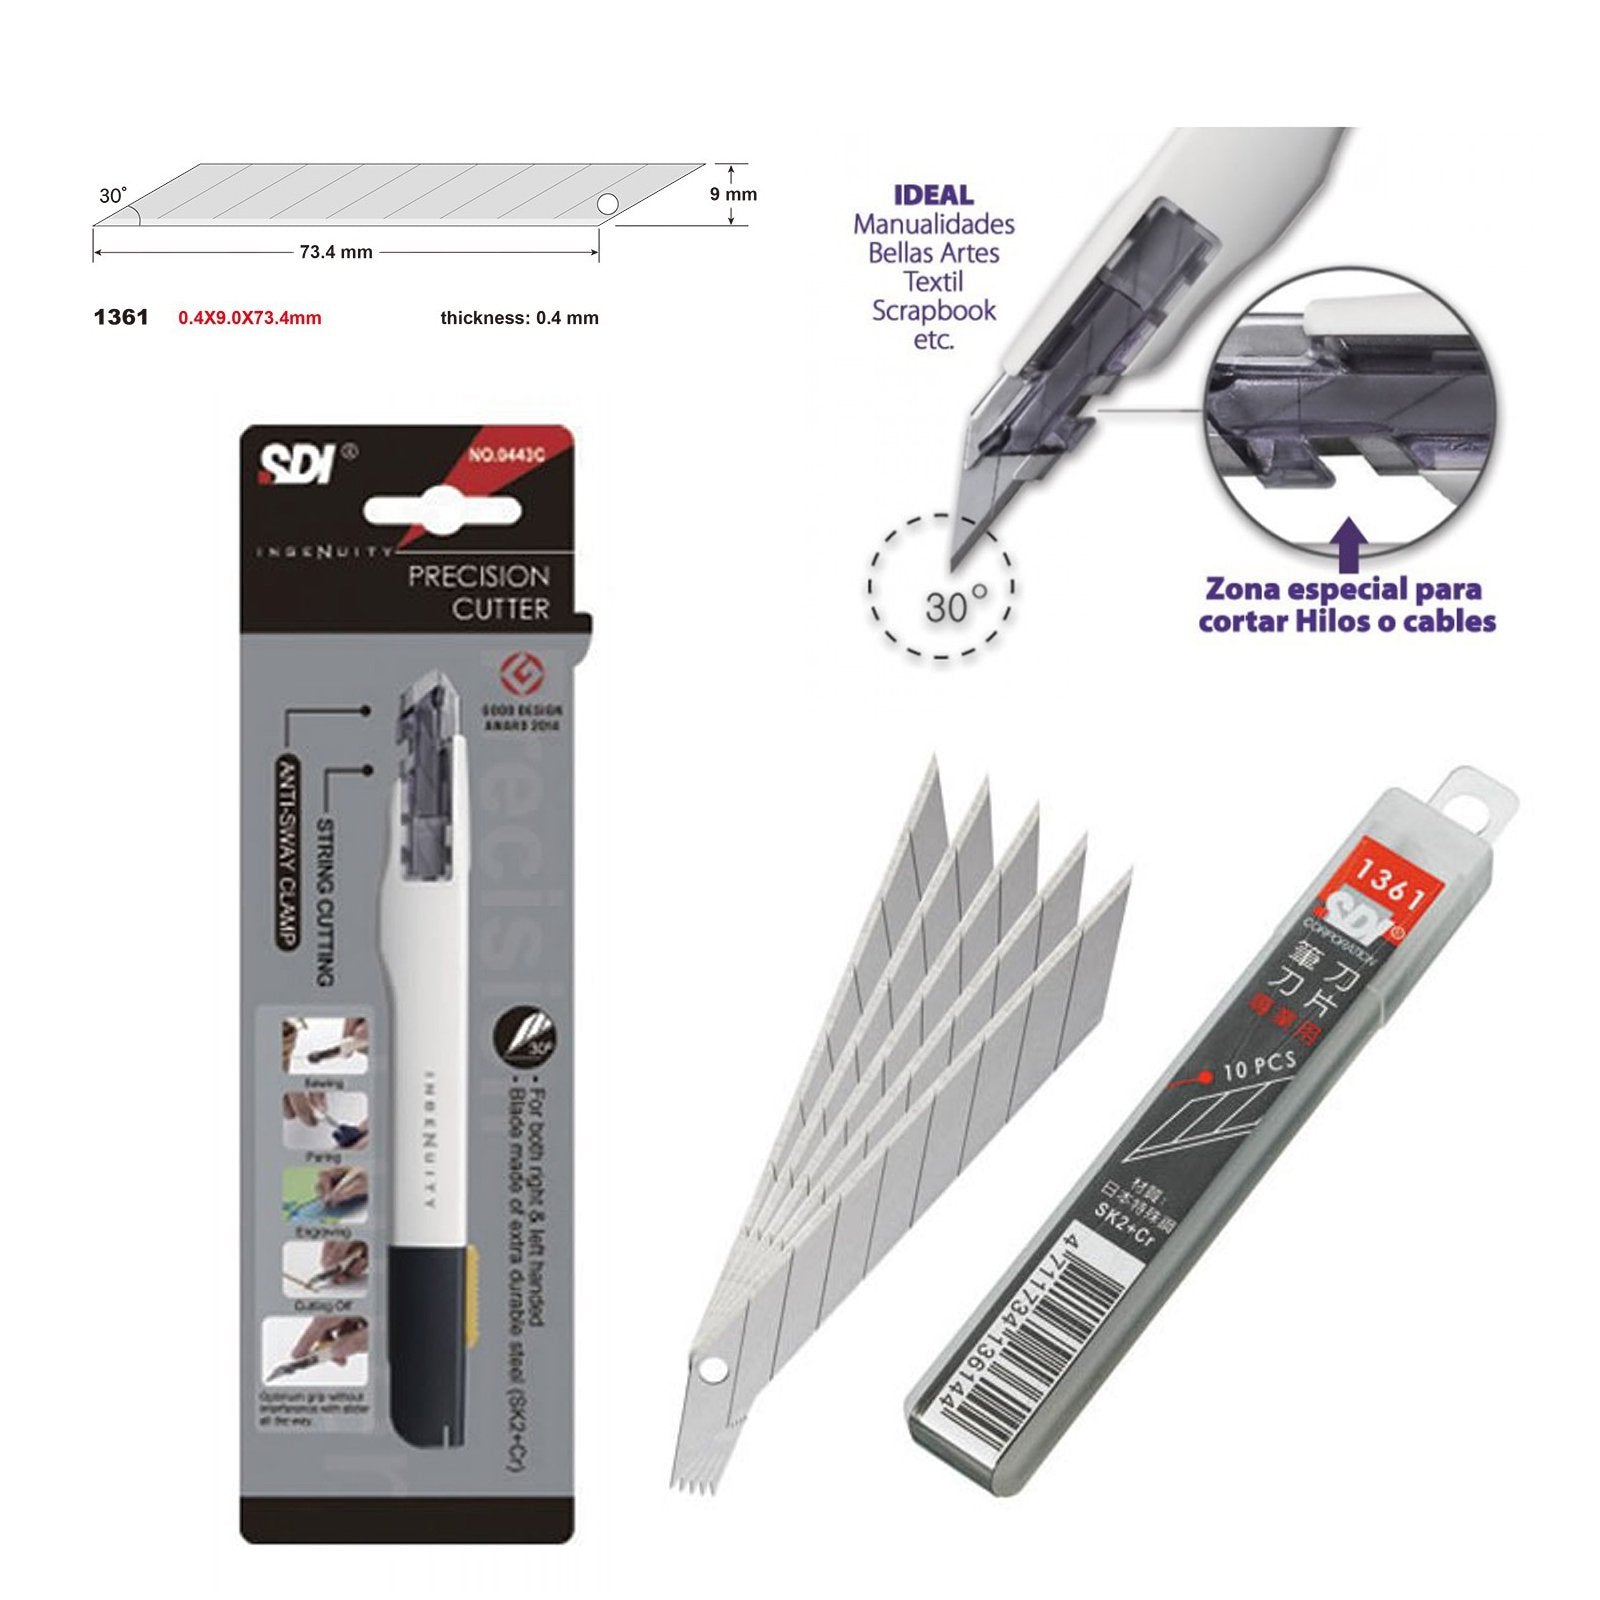 Cutter de precisión ARTE - El cutter de arte y manualidades más práctico -  REF.0408-R-1 - Cuchilla 9 mm. Fabricado por SDI y distribuido por Office